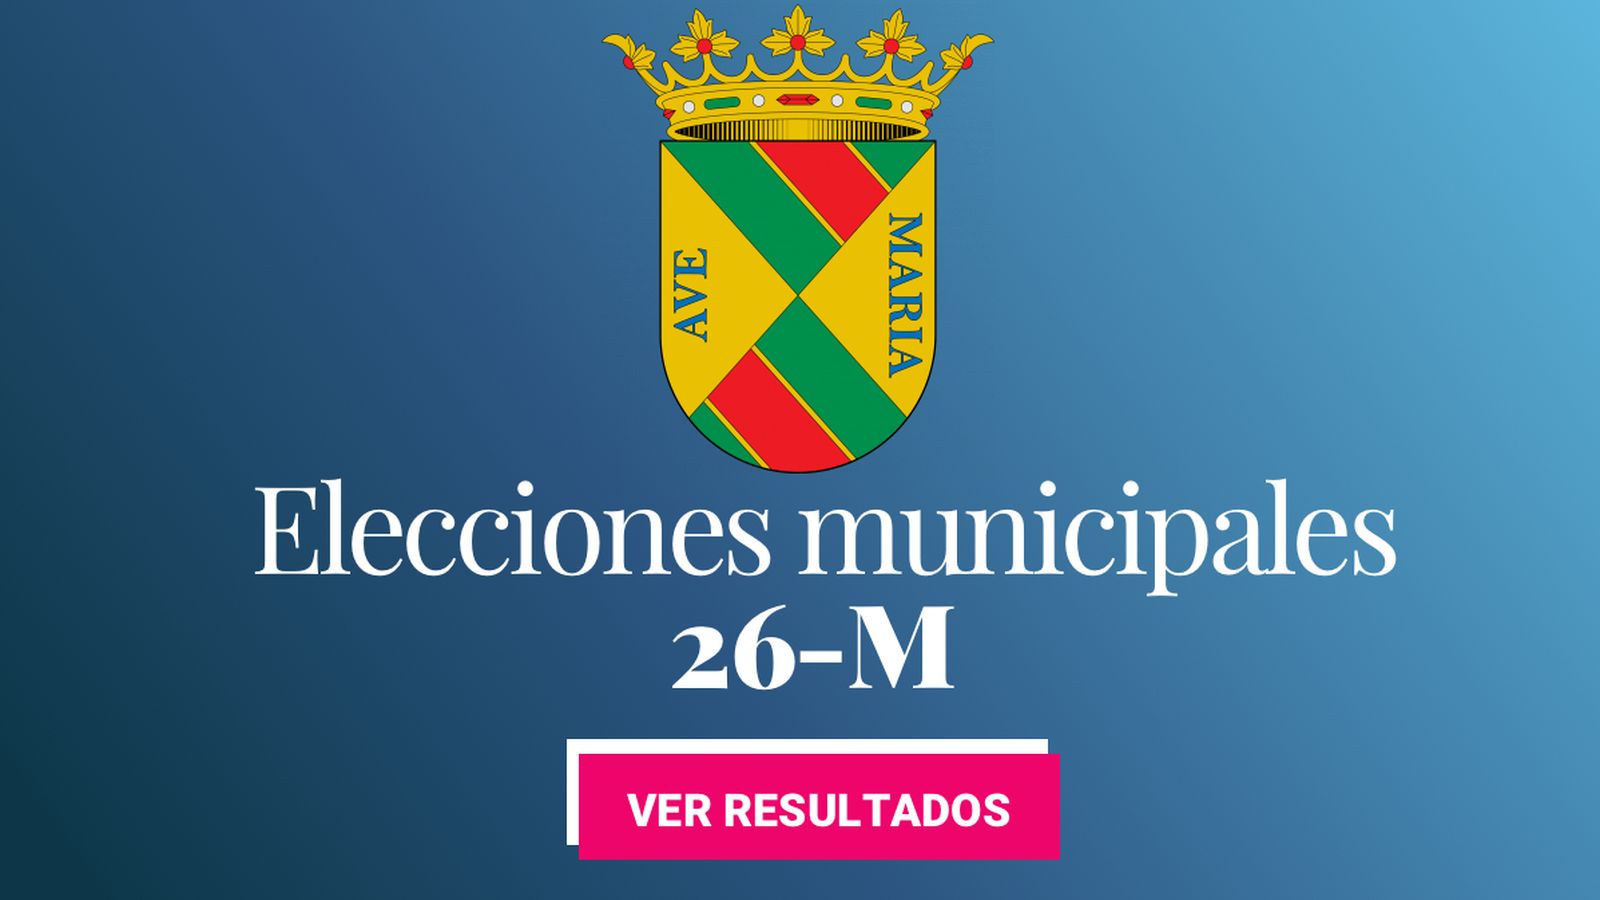 Foto: Elecciones municipales 2019 en Collado Villalba. (C.C./EC)